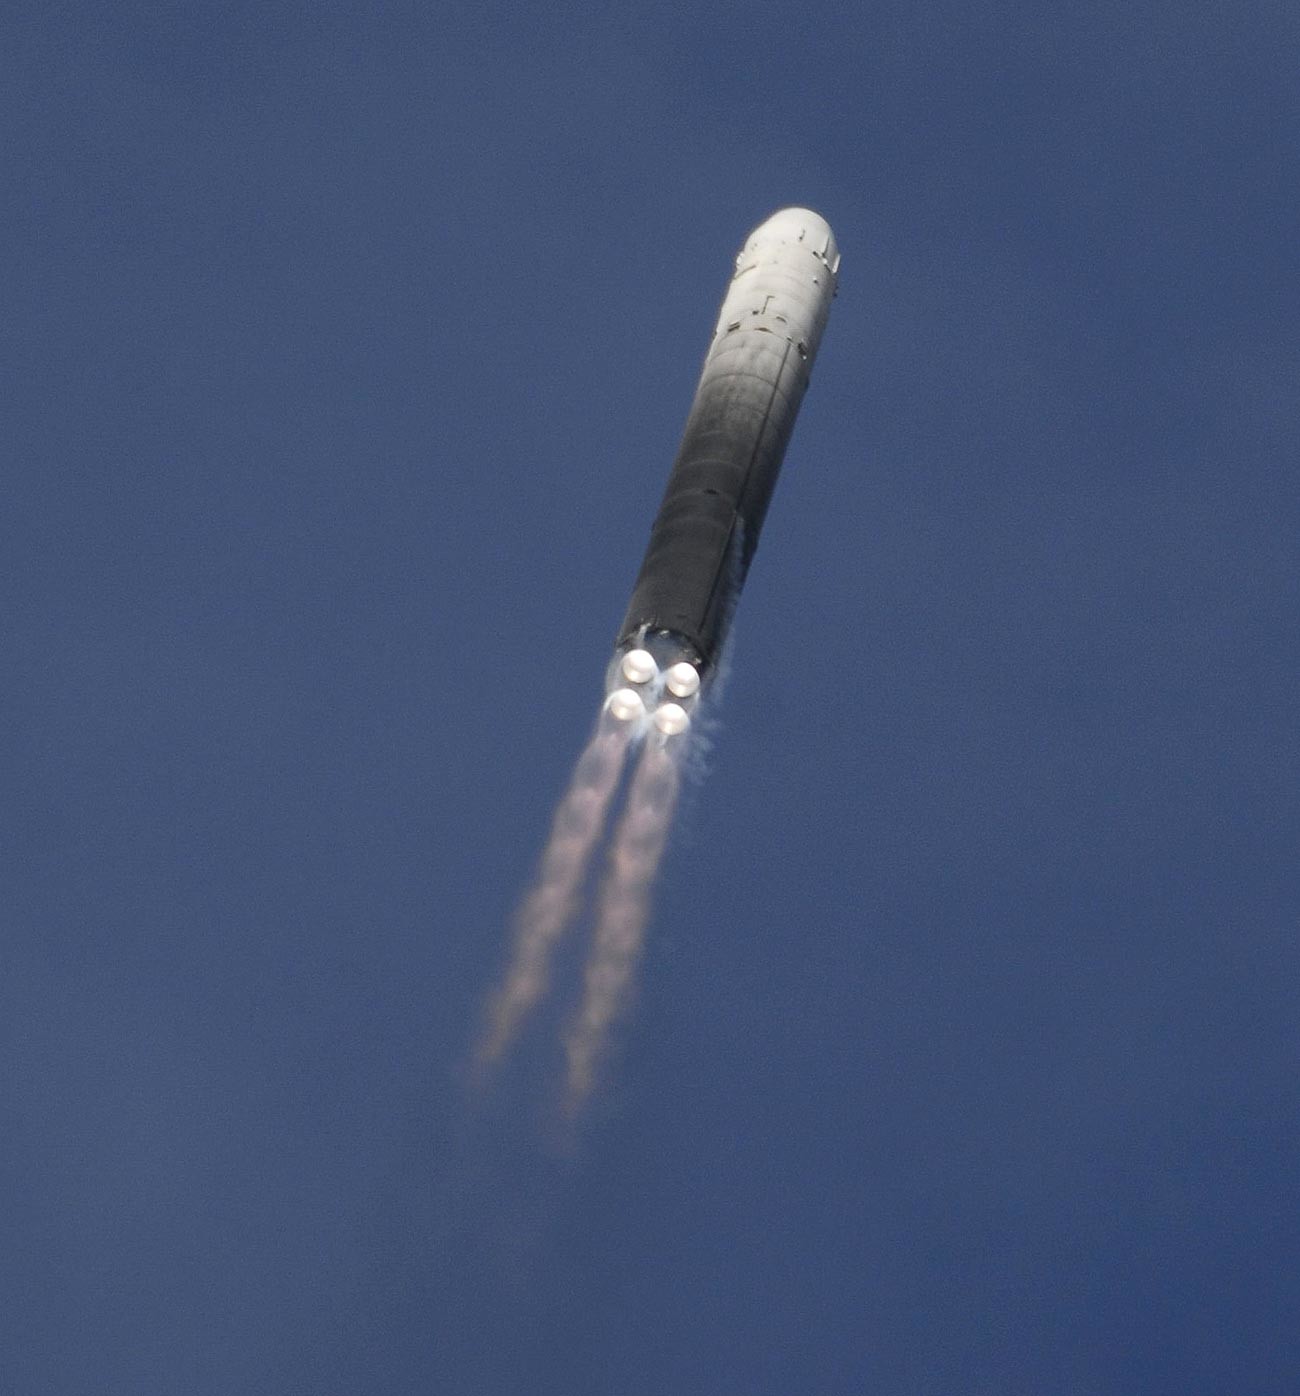 Raketne trupe strateške namjene izvele su uspješno lansiranje interkontinentalne balističke rakete RS-18 